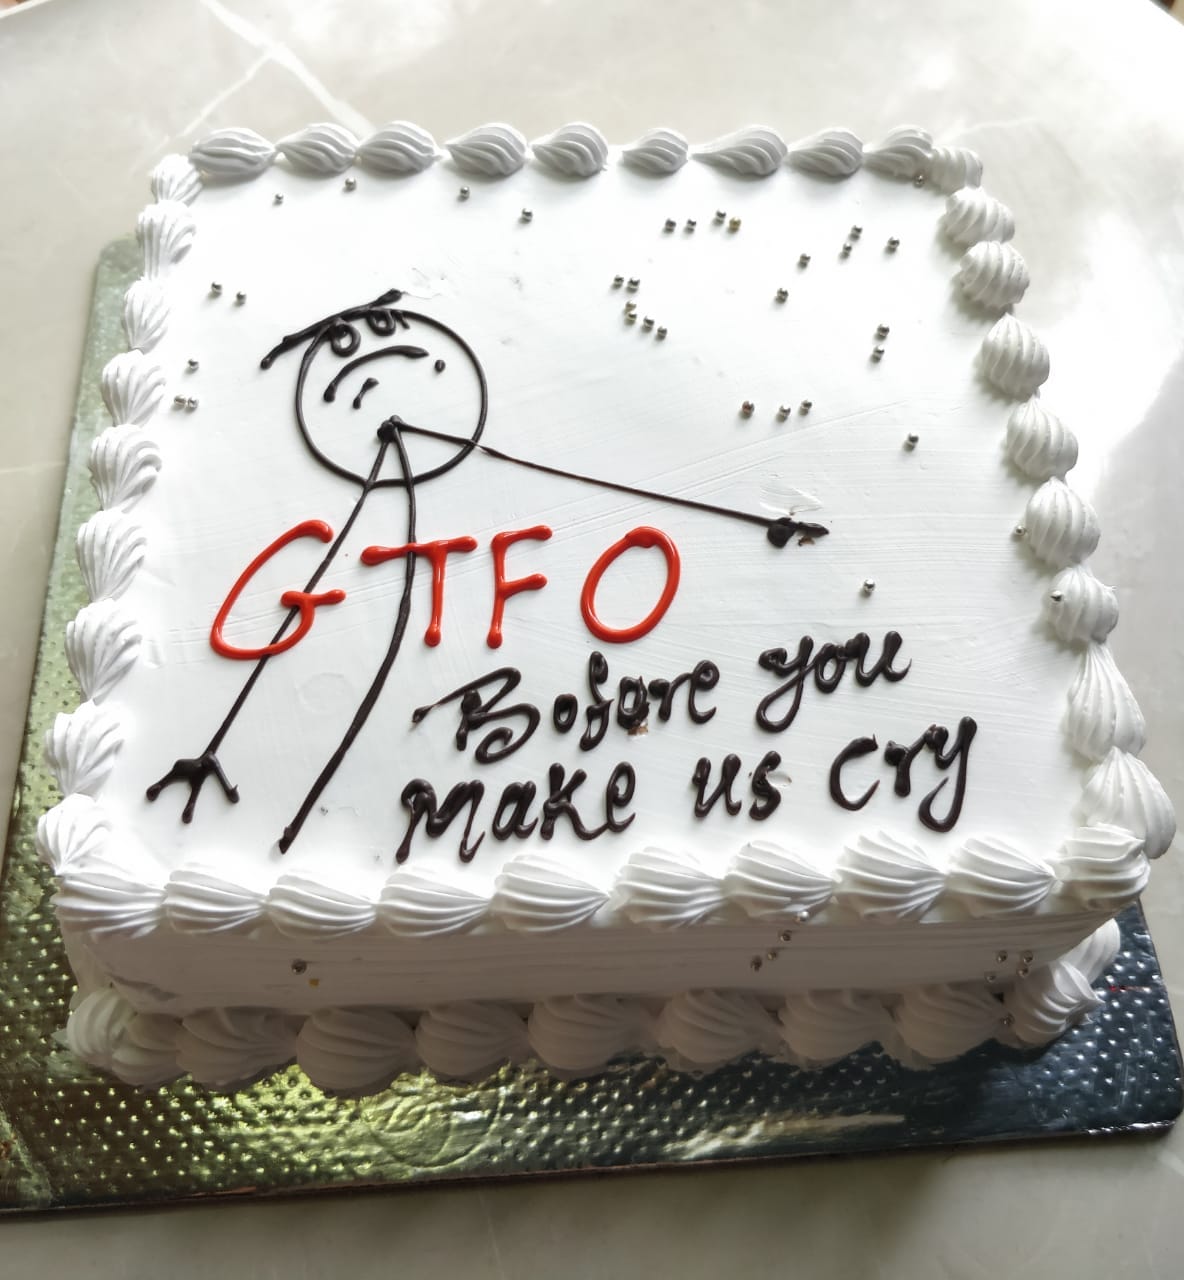 legateaucakes GTFO Farewell cake